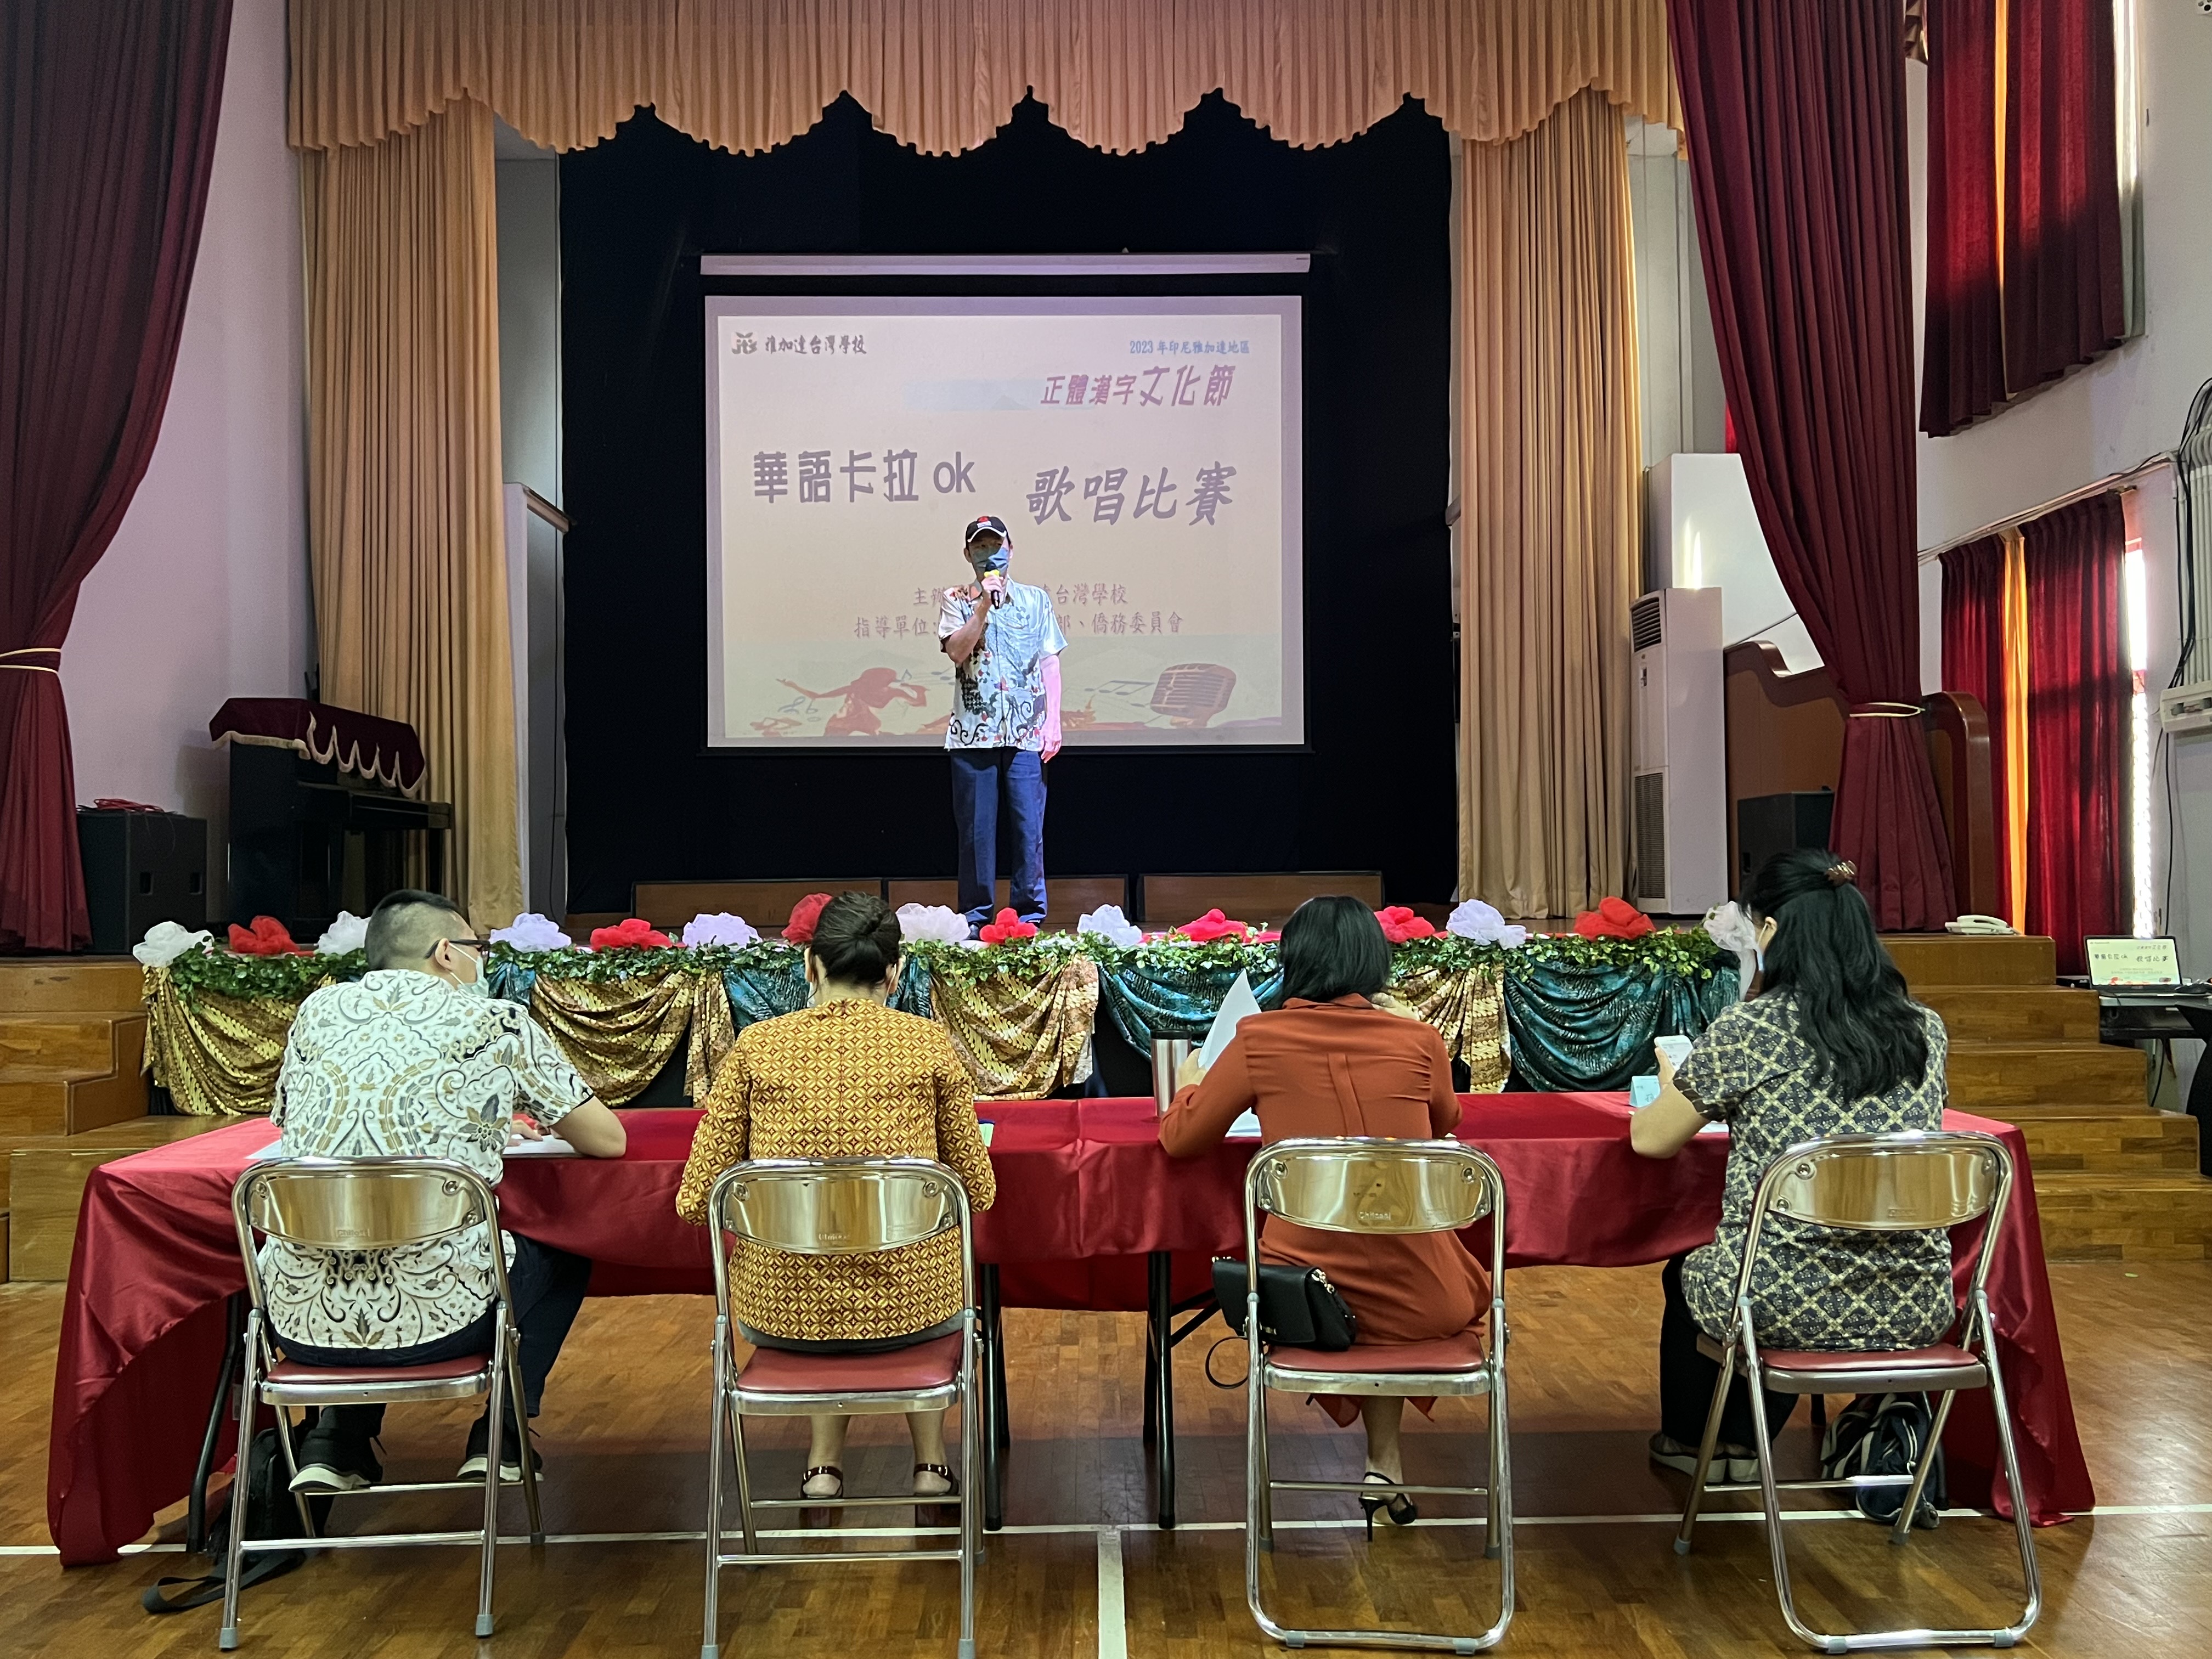 雅加達臺灣學校張晉福校長為正體漢字文化節開場並勉勵大家。